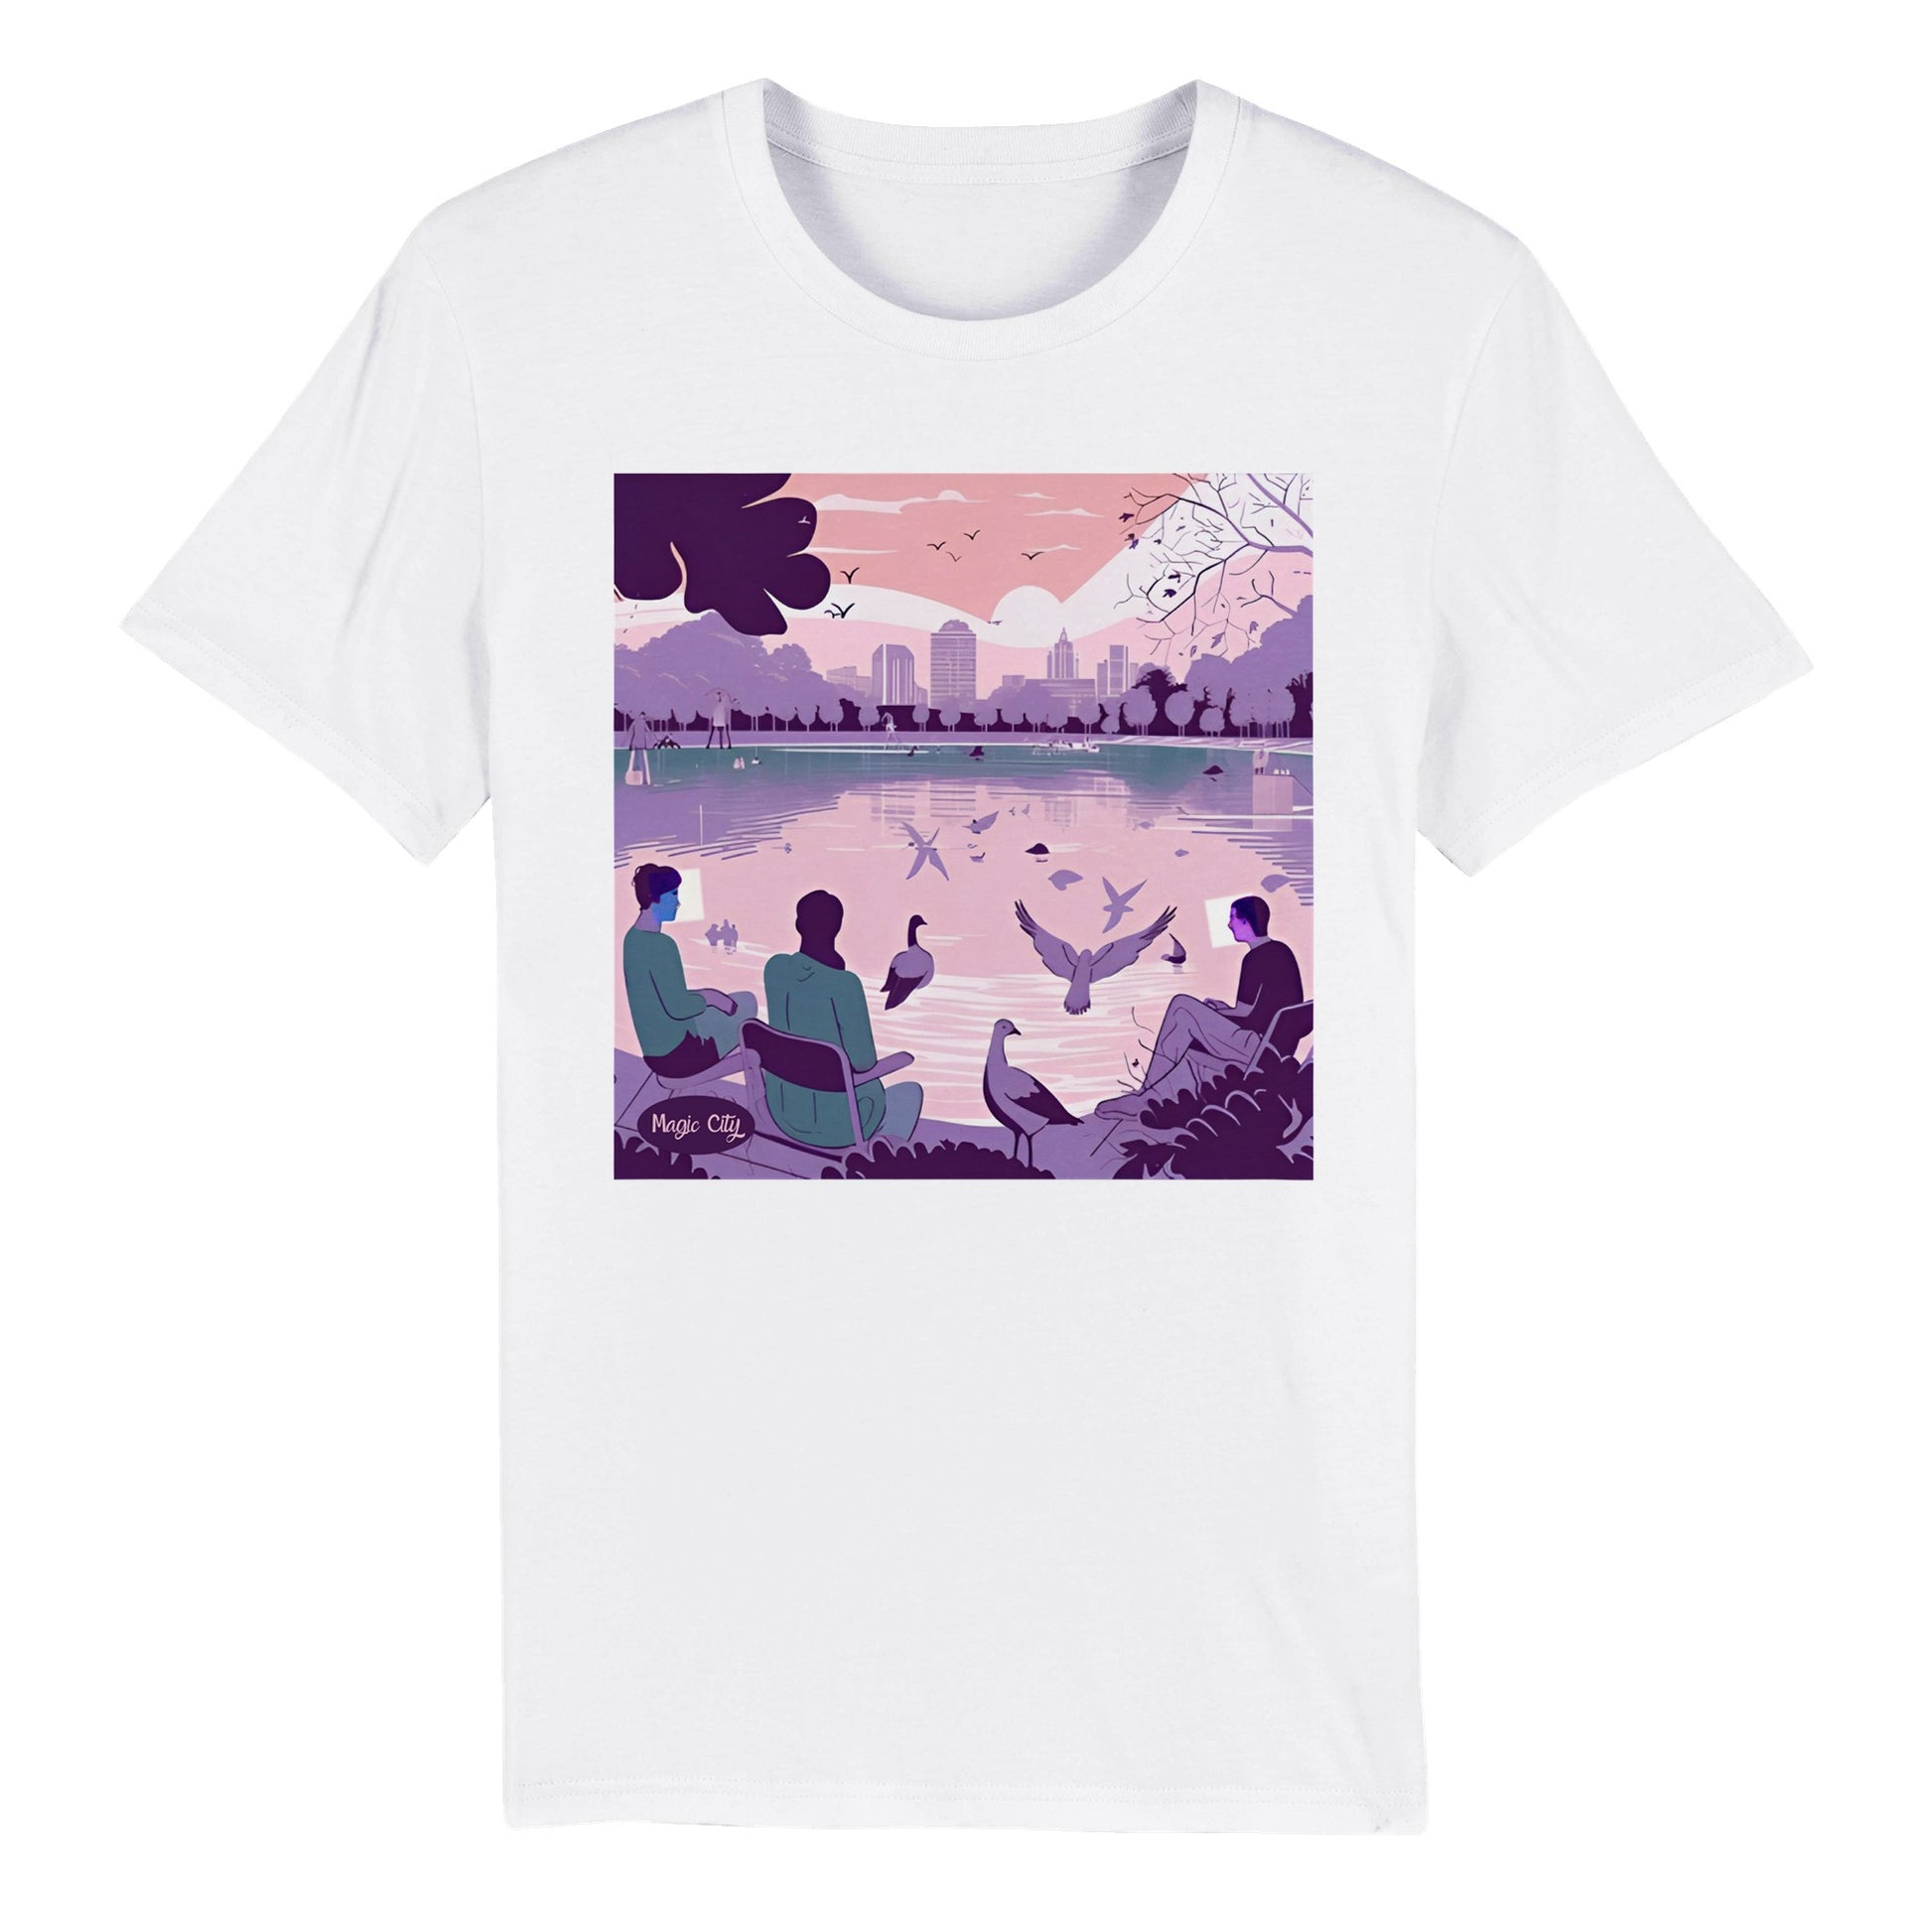 Original camiseta blanca con diseño en pecho de personas en un parque en tonos lila